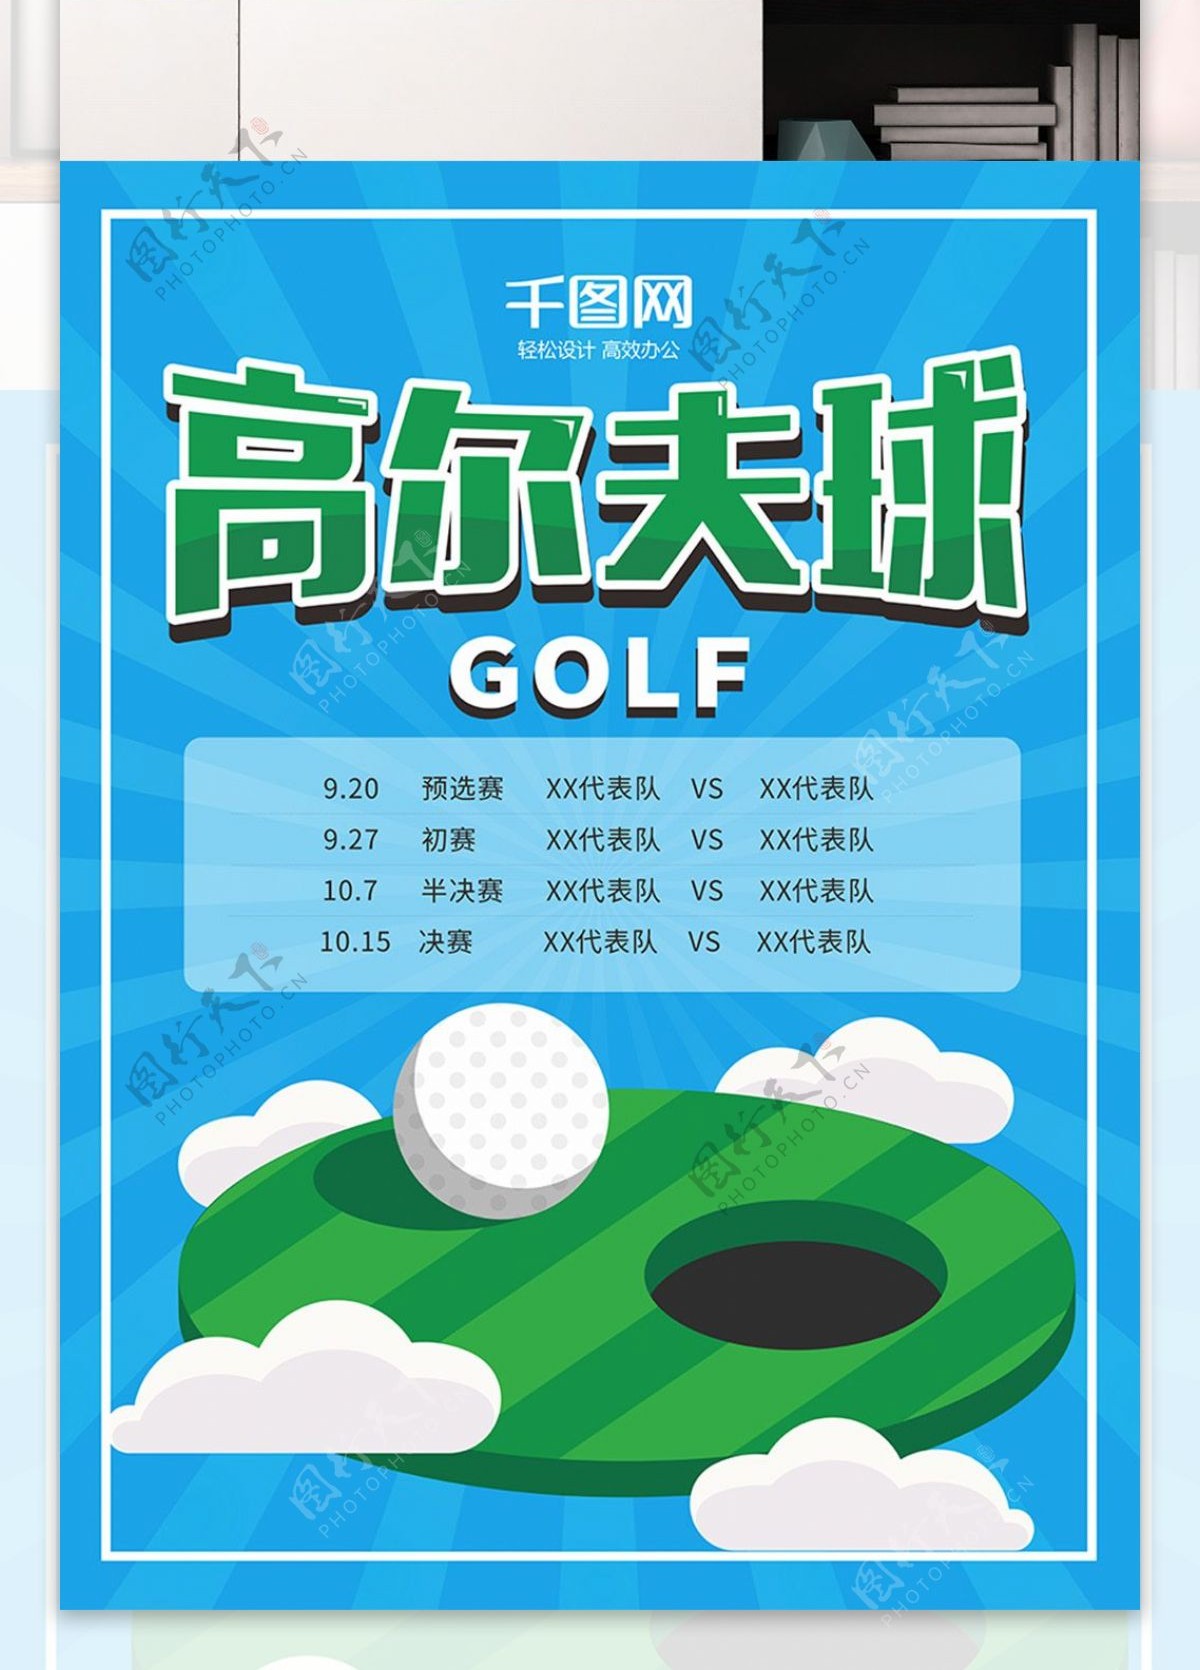 蓝色简约高尔夫球运动比赛时间表宣传海报